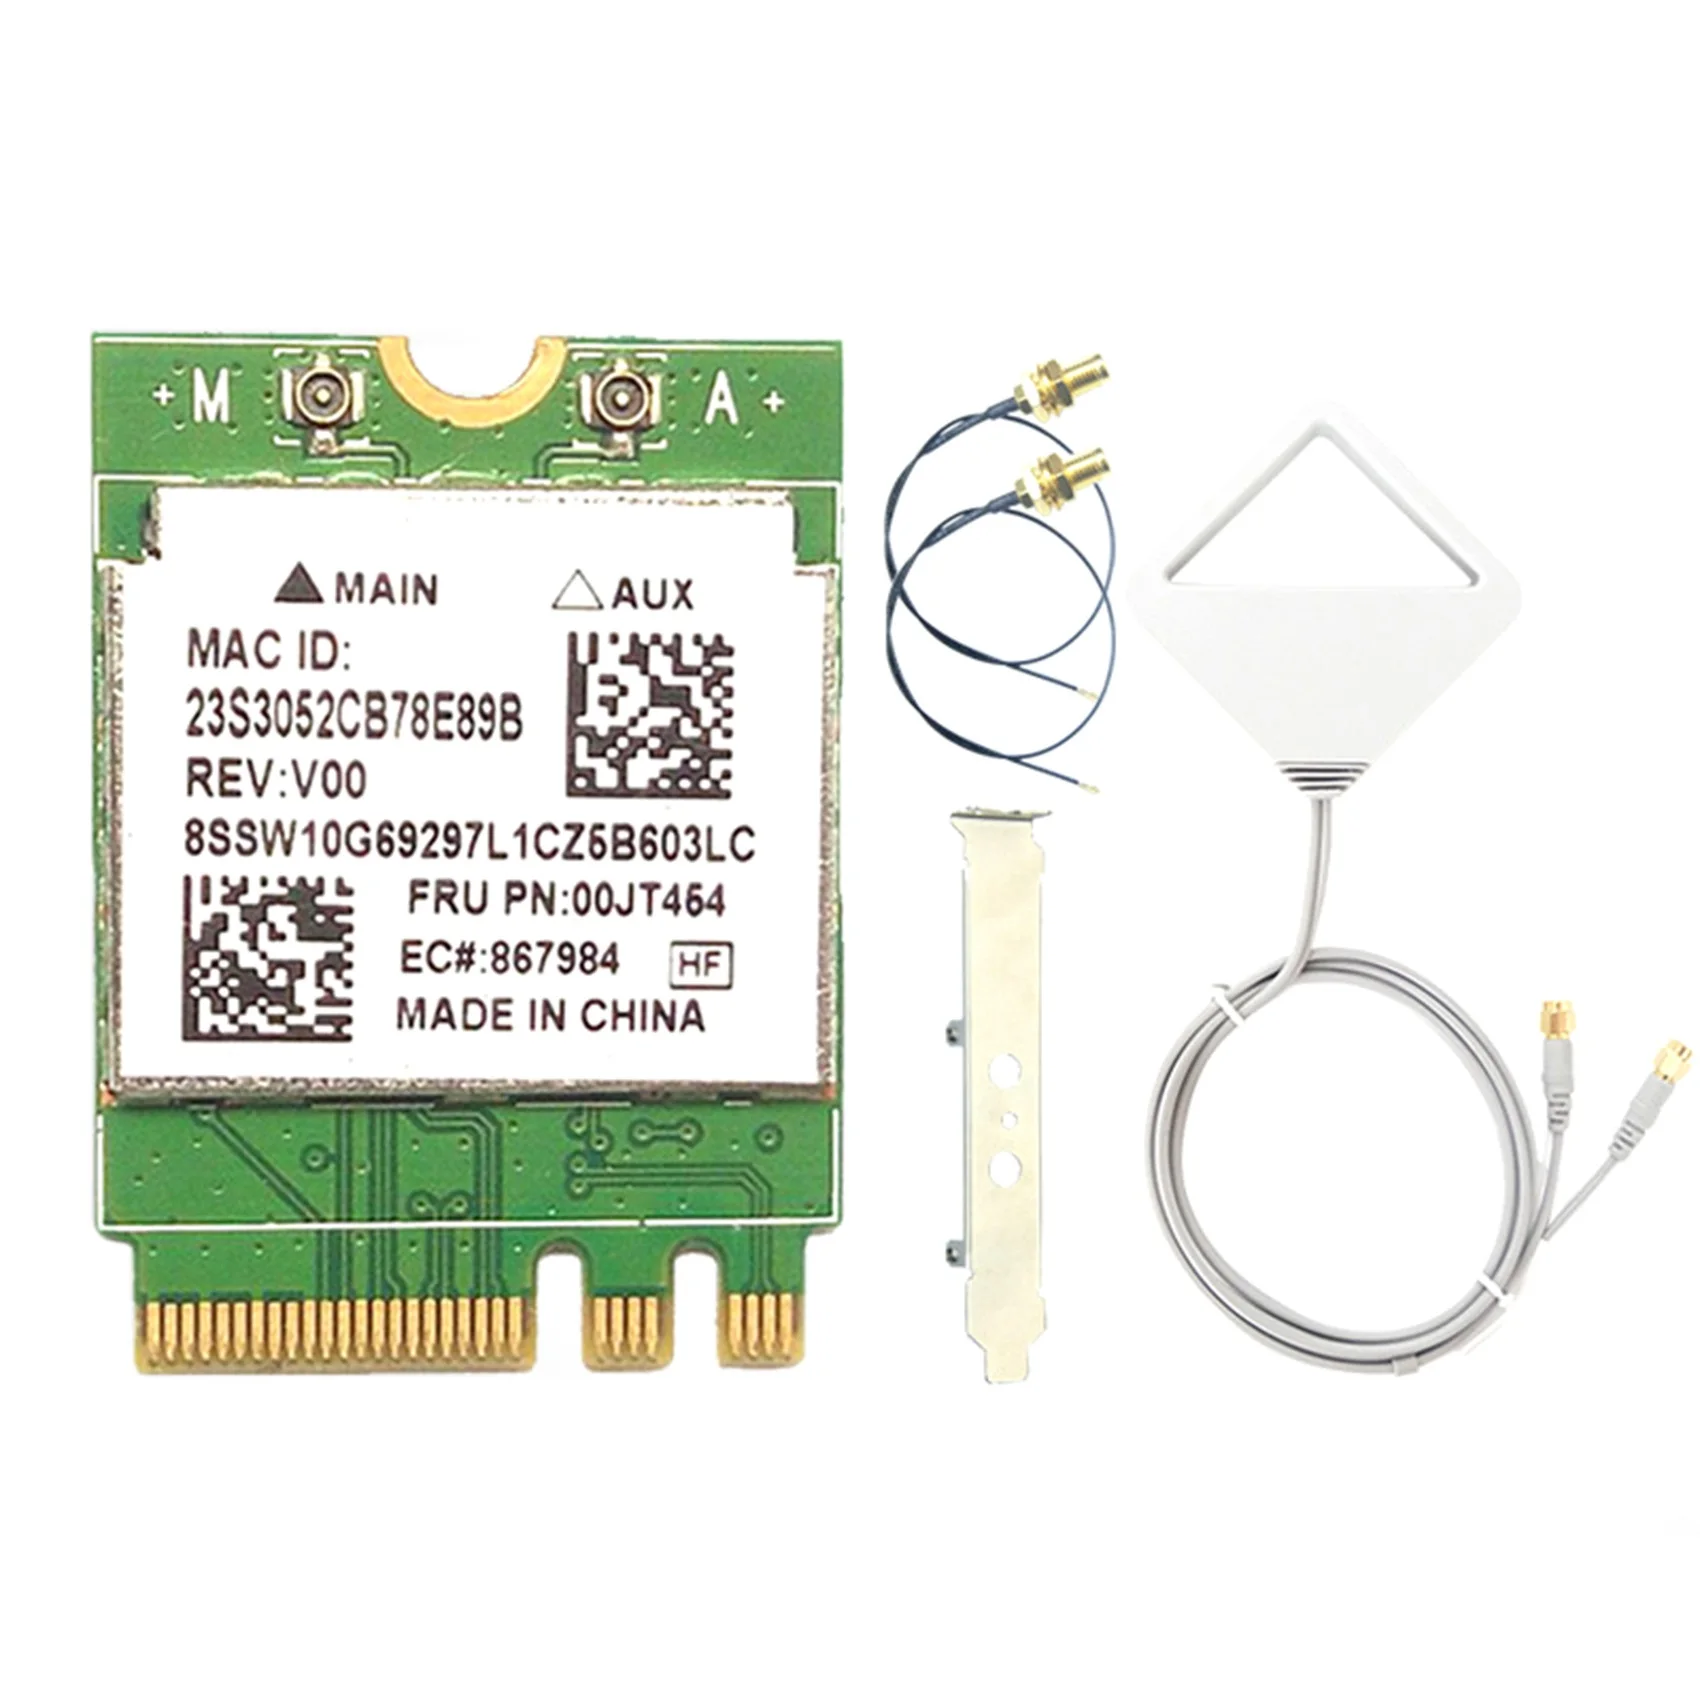 

RTL8821AE Двухчастотная сетевая карта 433 Мбит/с, сетевая карта, адаптер M.2 NGFF 2230, беспроводная сетевая карта, модуль Wi-Fi